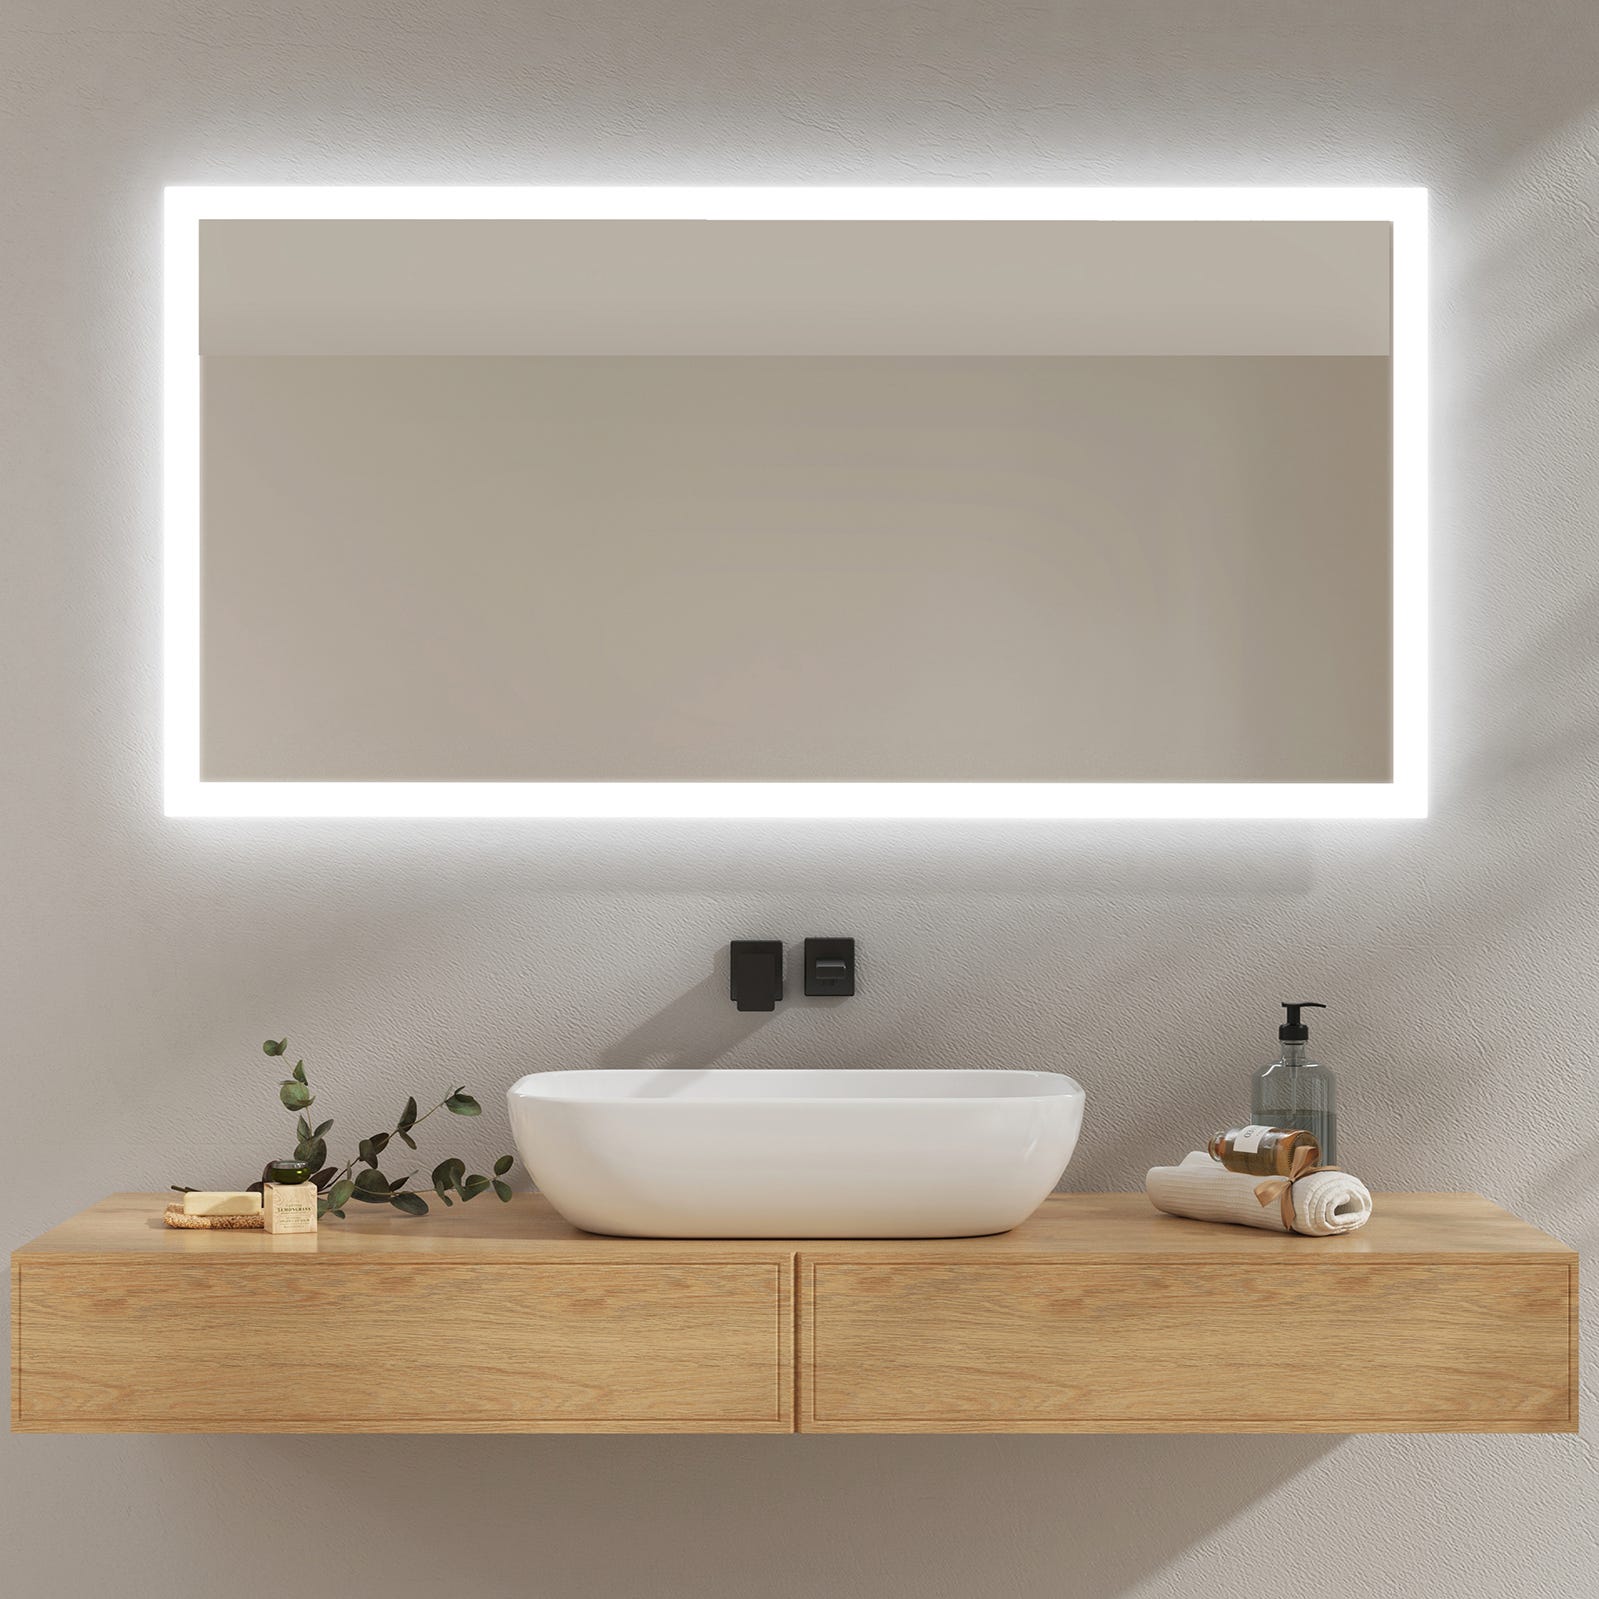 EMKE Miroir lumineux de salle de bain avec Interrupteur à bouton, Anti-buée,  deux couleurs claires, 120x60 cm Lumière Blanche Froide/Chaude